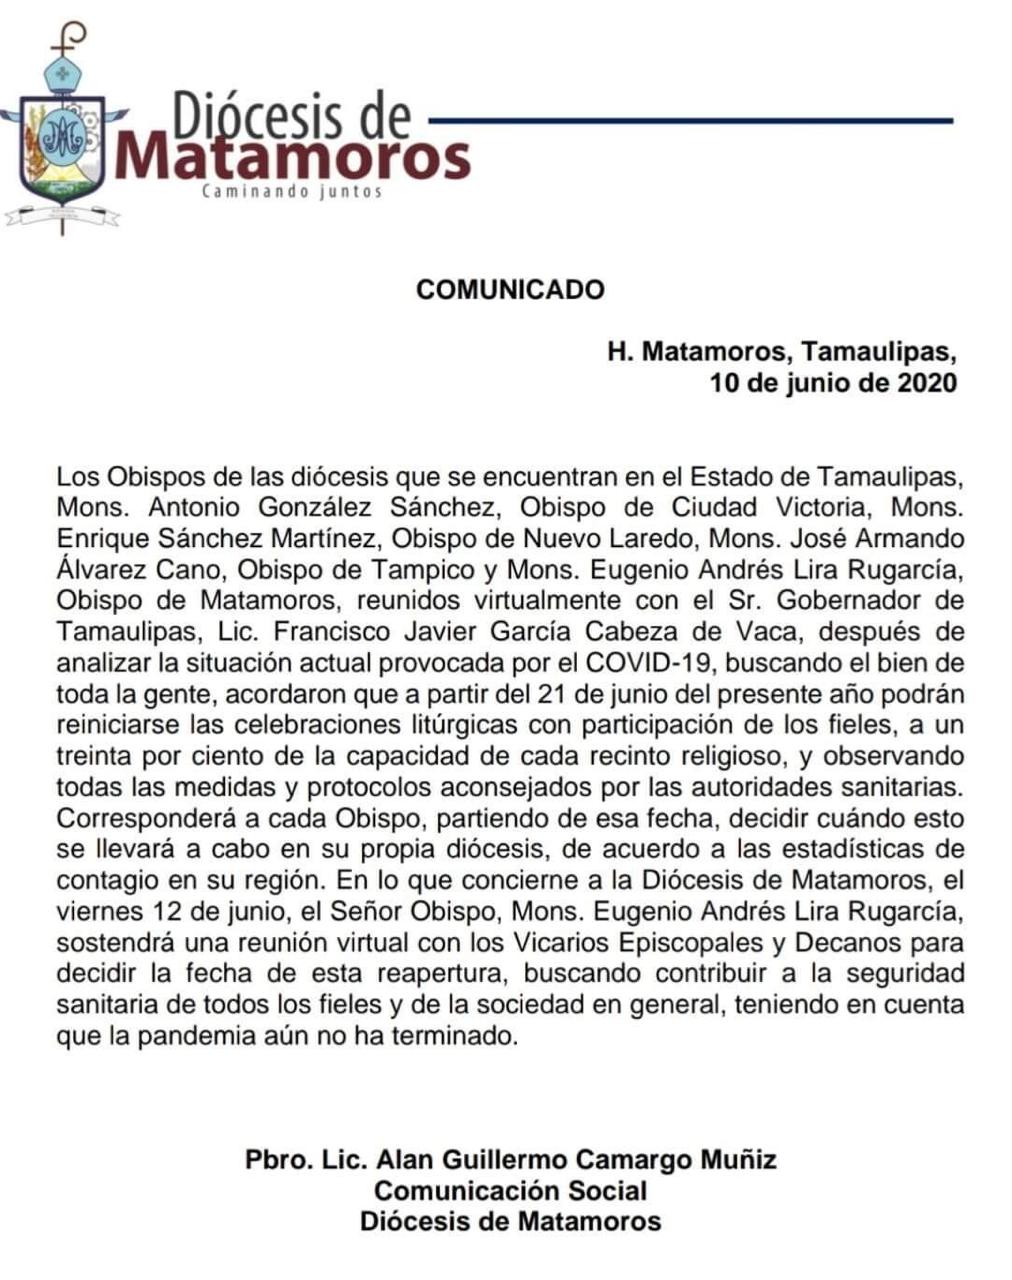 200610 Diocesis de Matamoros Comunicado1